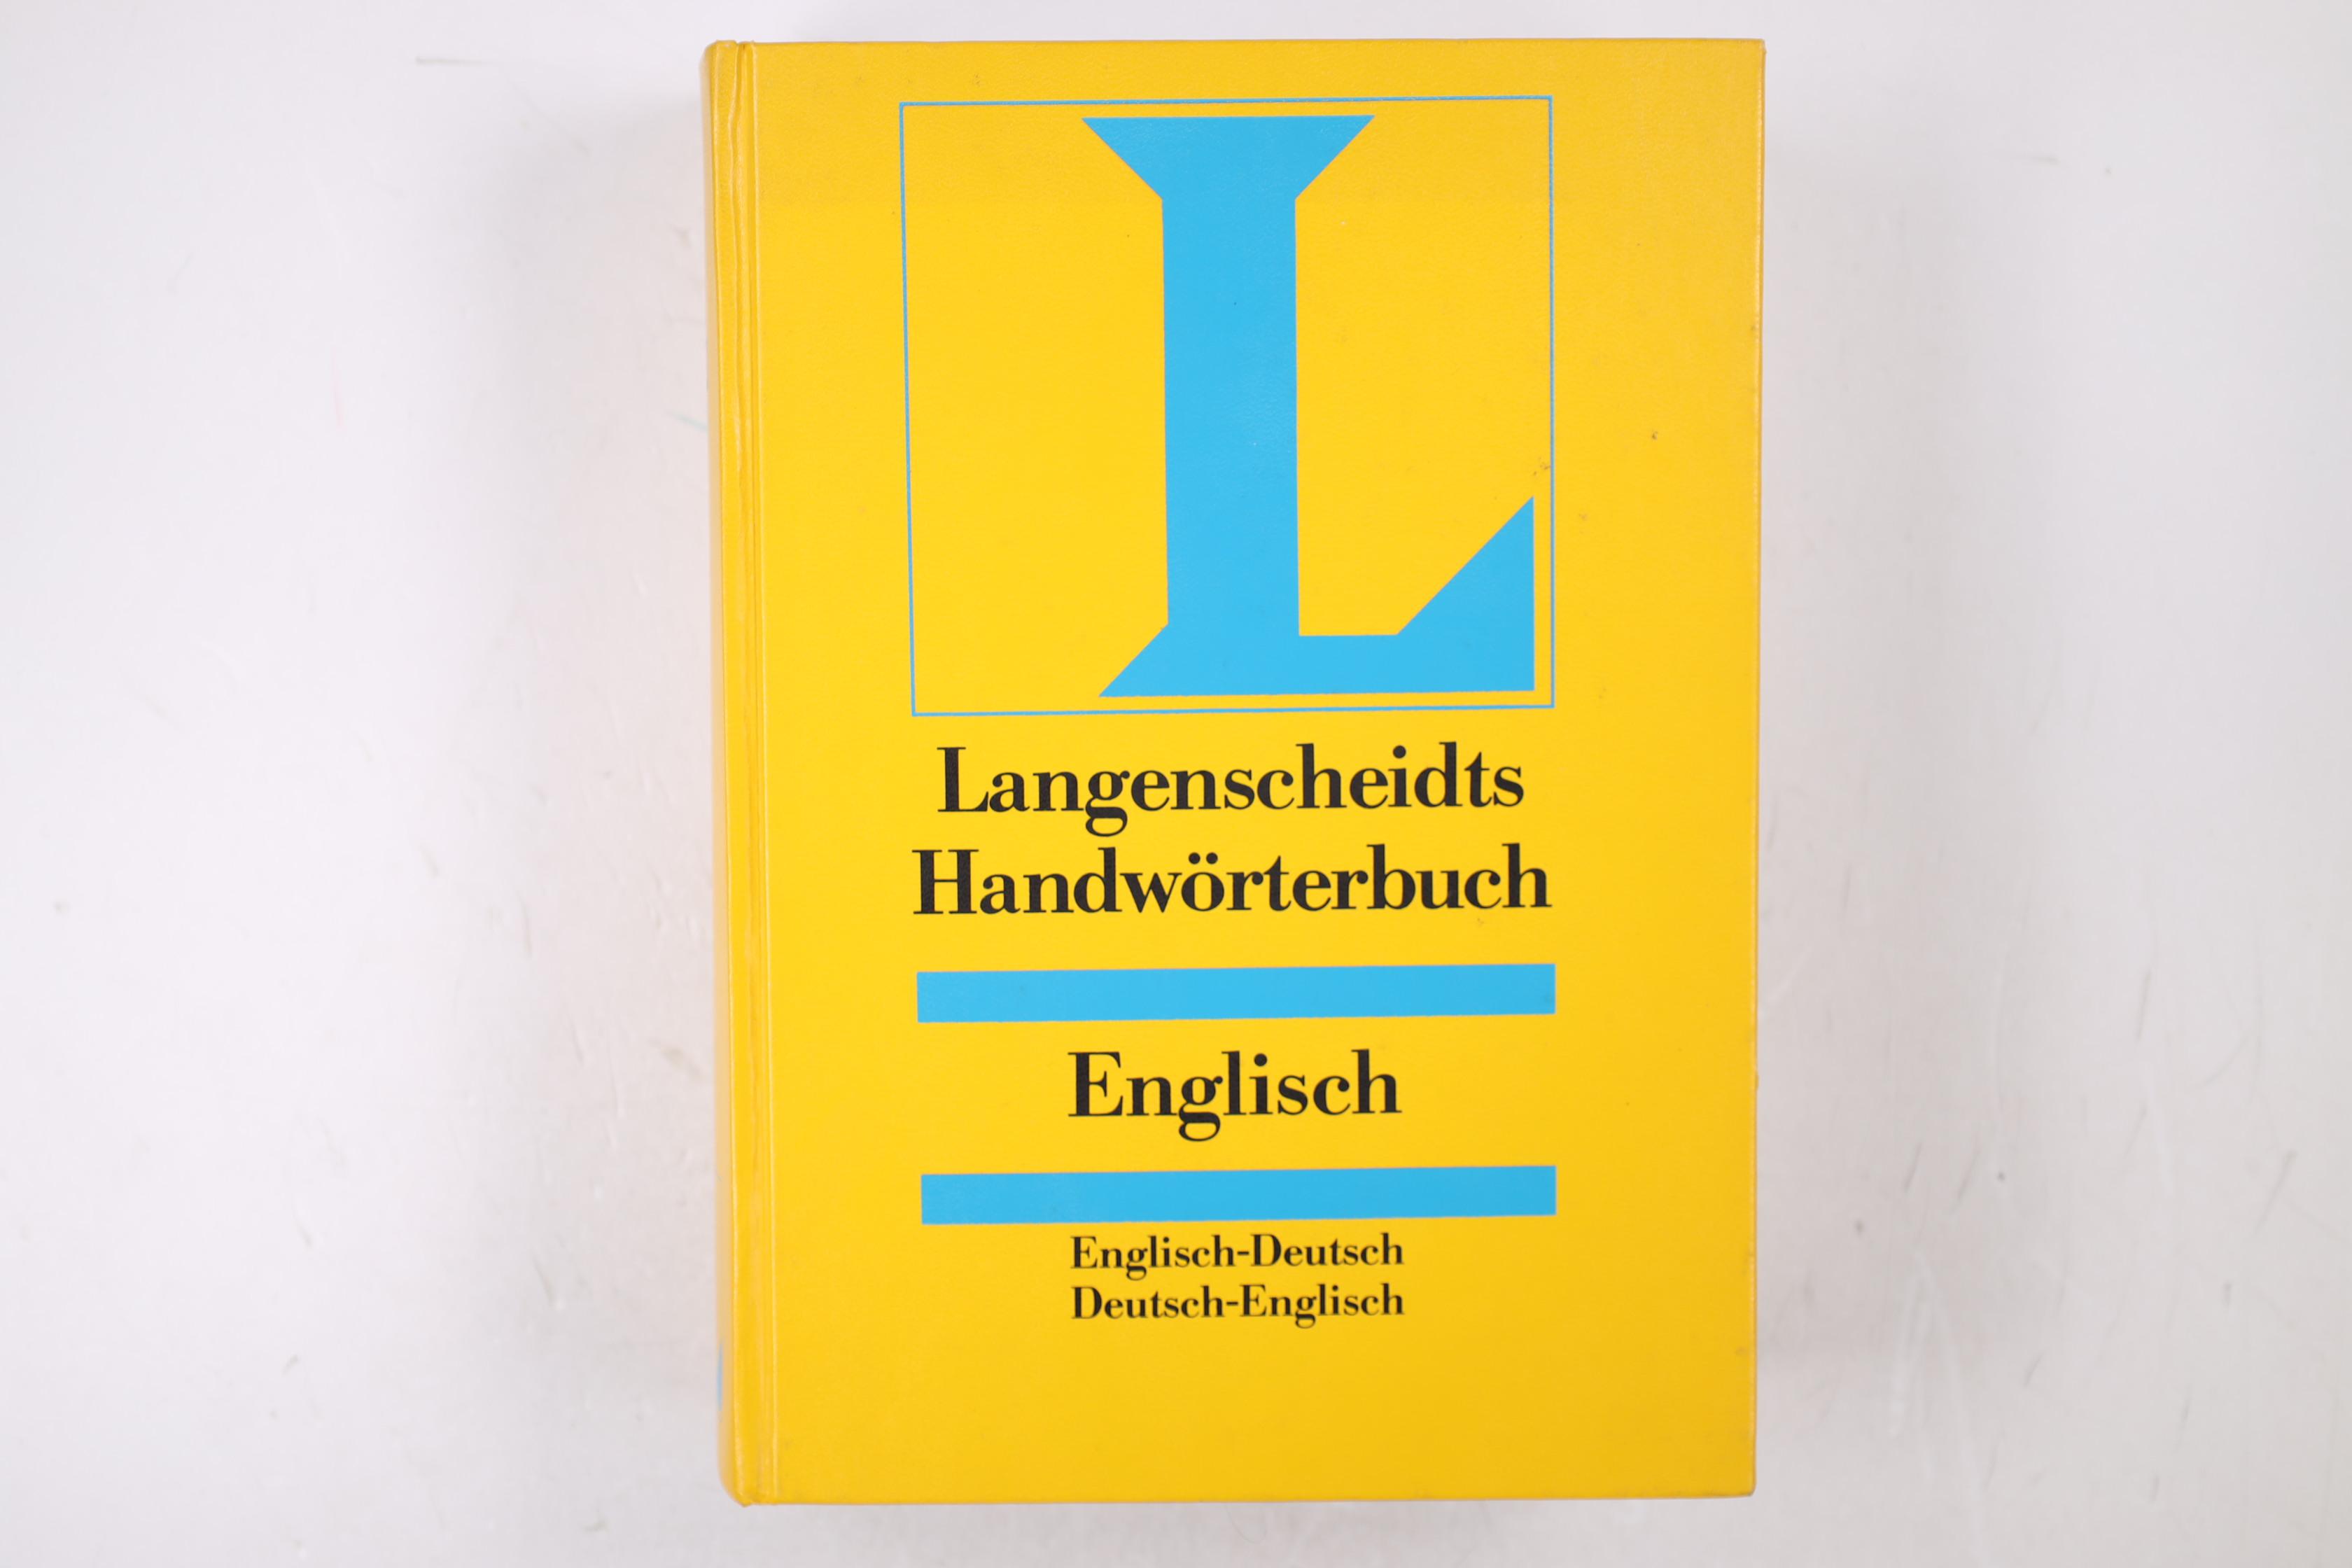 LANGENSCHEIDTS HANDWÖRTERBUCH, ENGLISCH. Englisch-Deutsch Deutsch-Englisch - Langenscheidt (Hrsg.)